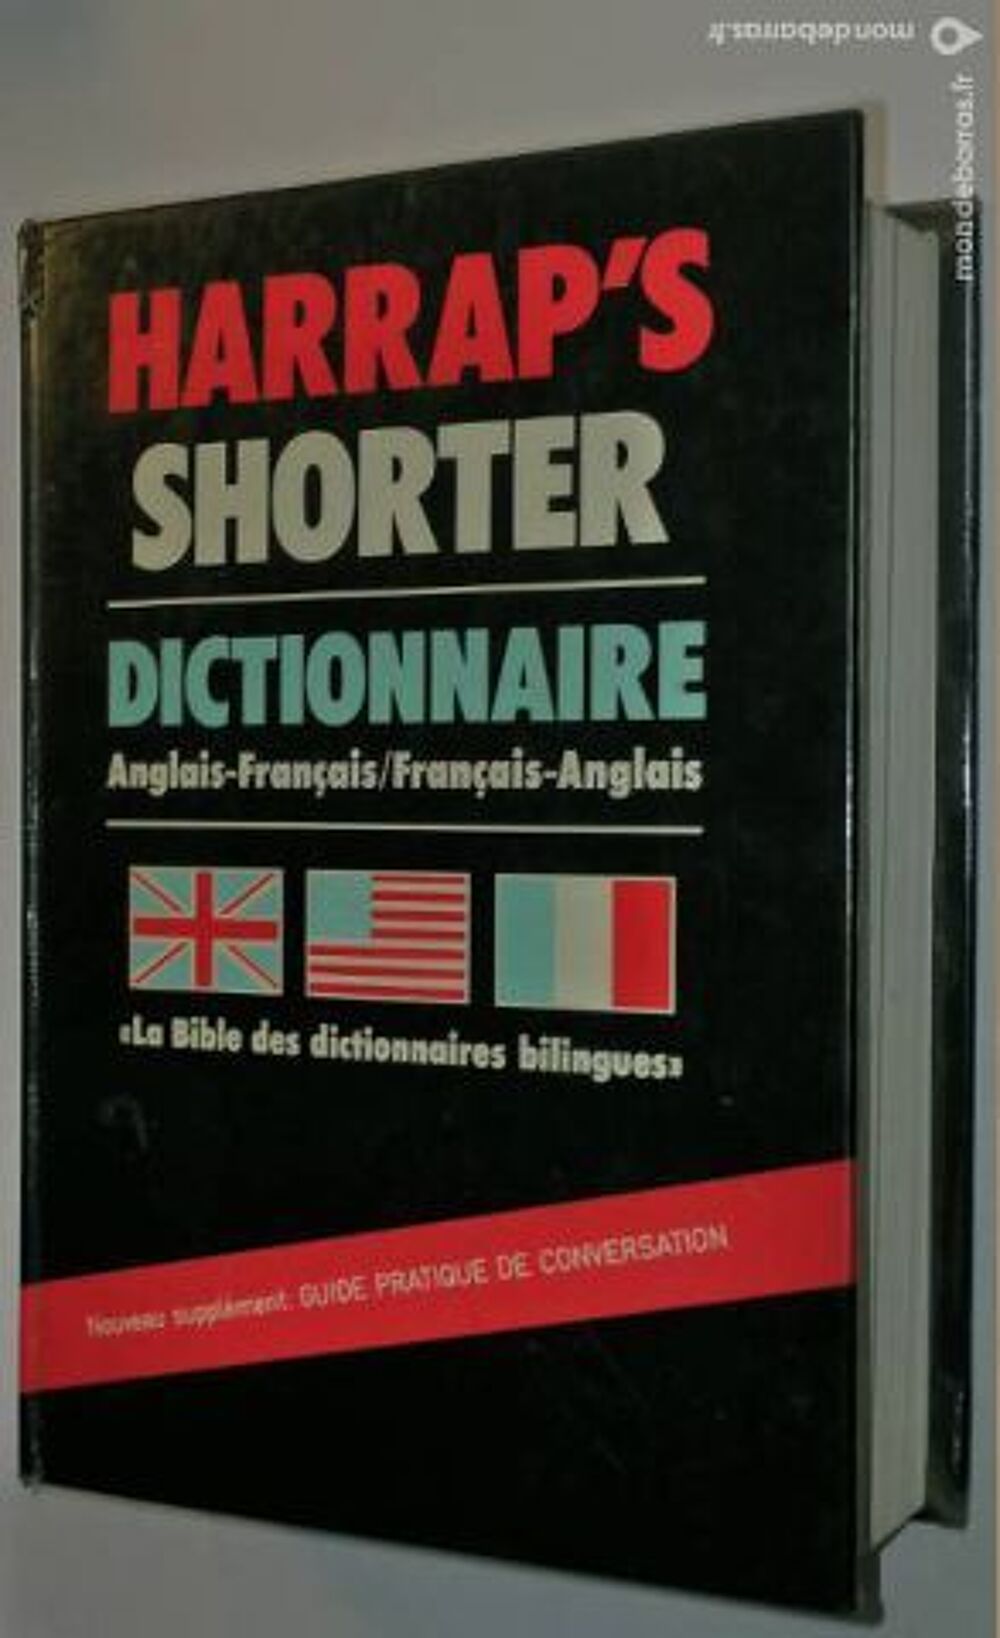 Dictionnaire harrap's shorter francais /anglais Livres et BD